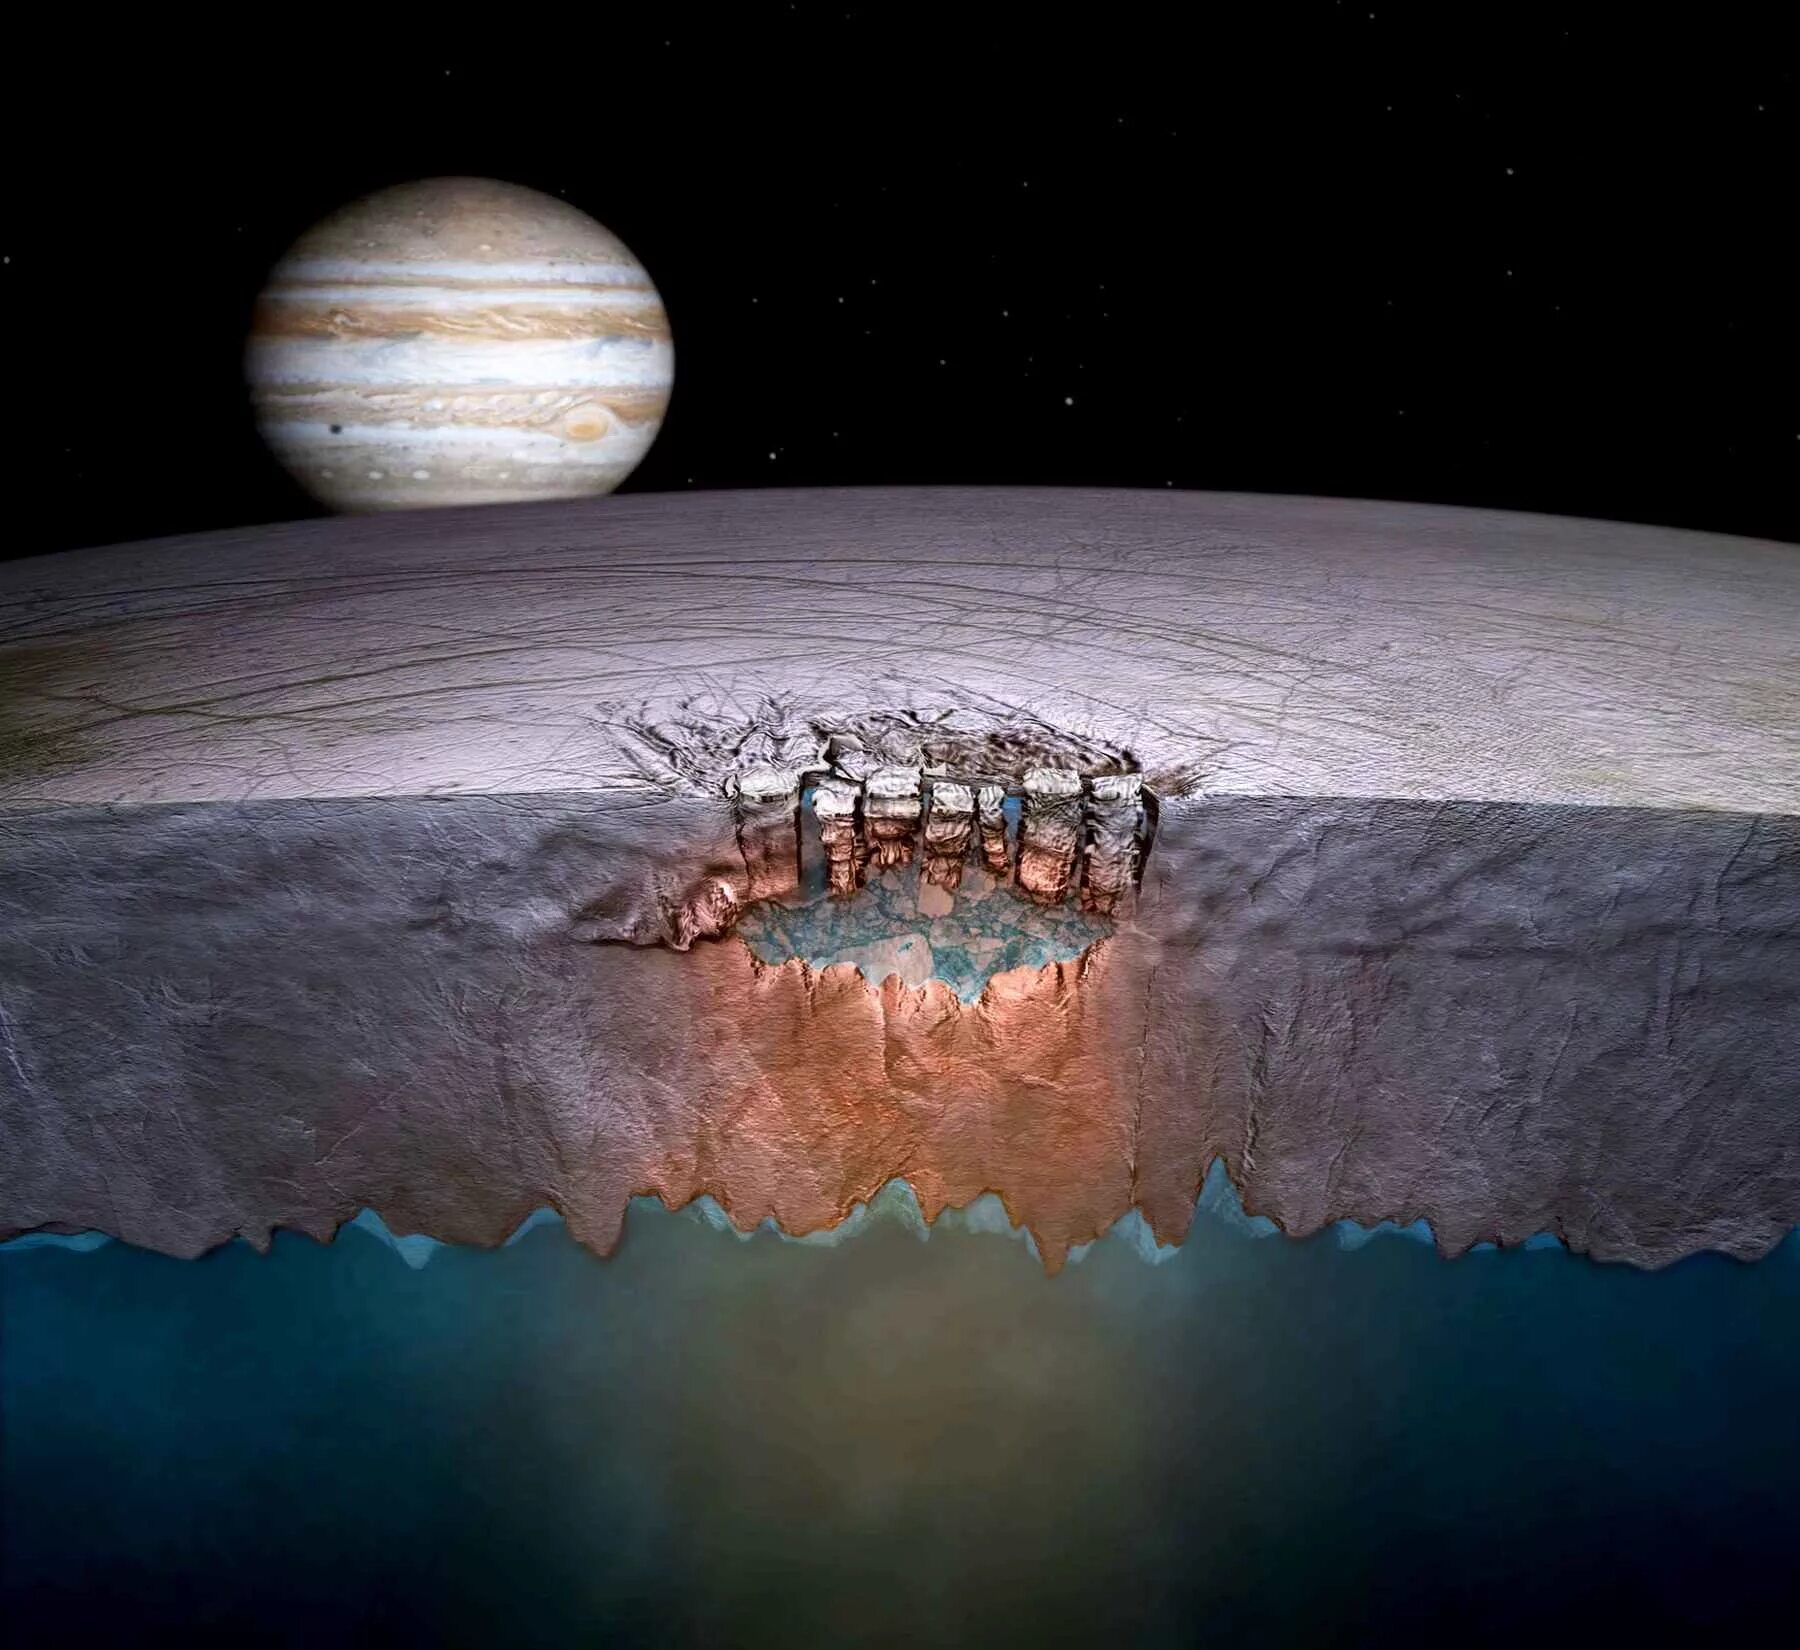 На европе есть жизнь. Европа Спутник Юпитера океан. Поверхность Европы спутника Юпитера. Европа ледяной Спутник Юпитера. Жизнь на Европе спутнике Юпитера.